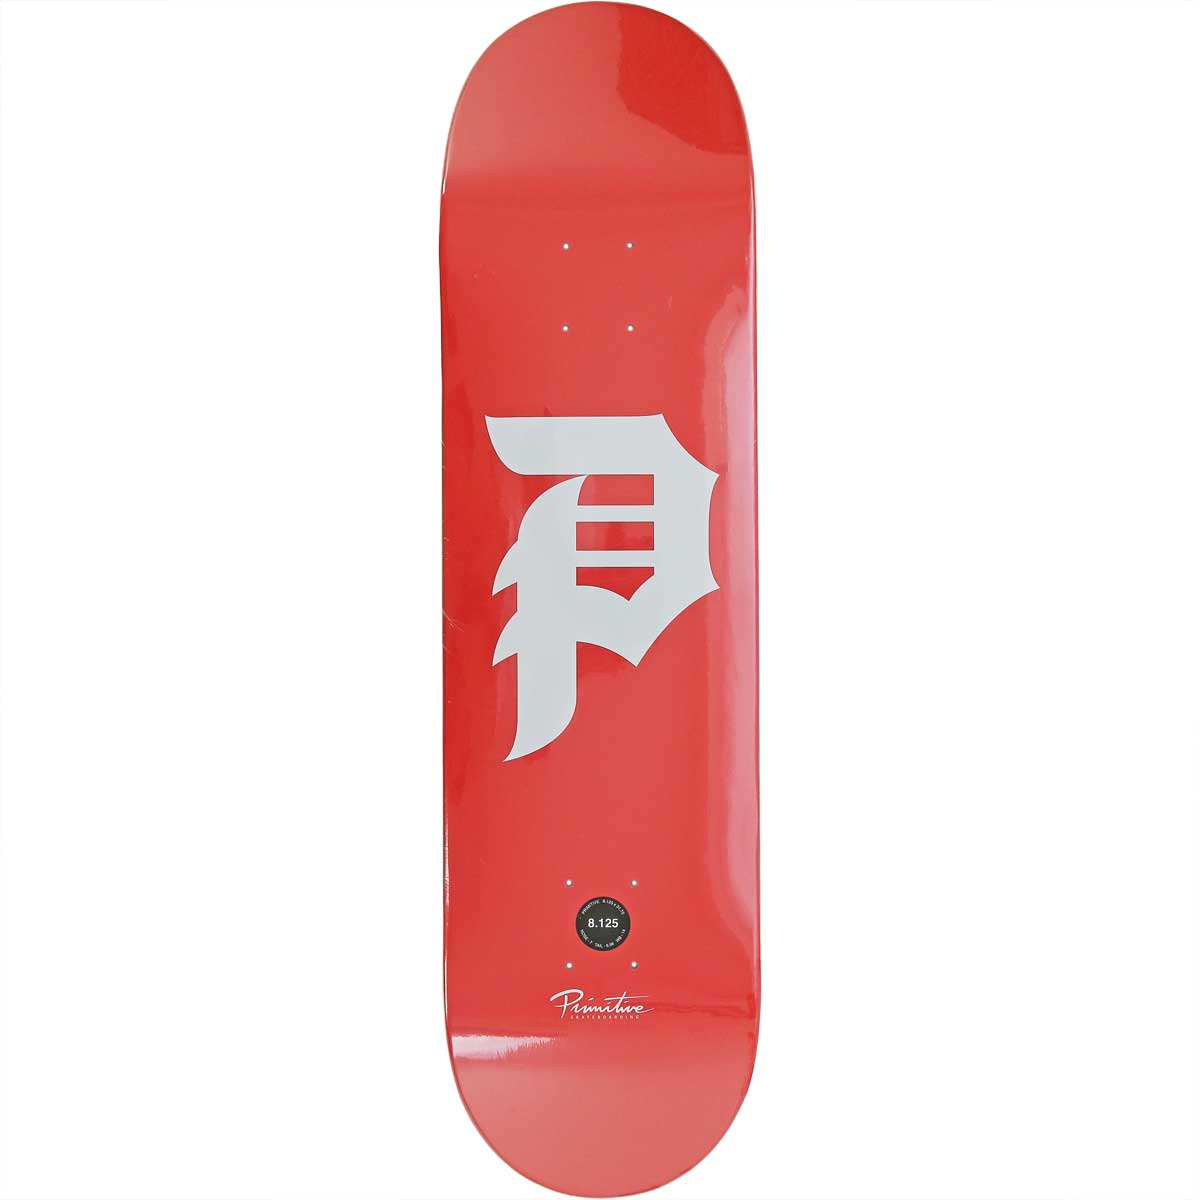 プリミティブ 8.125 インチ スケボー デッキ Primitive Skateboards